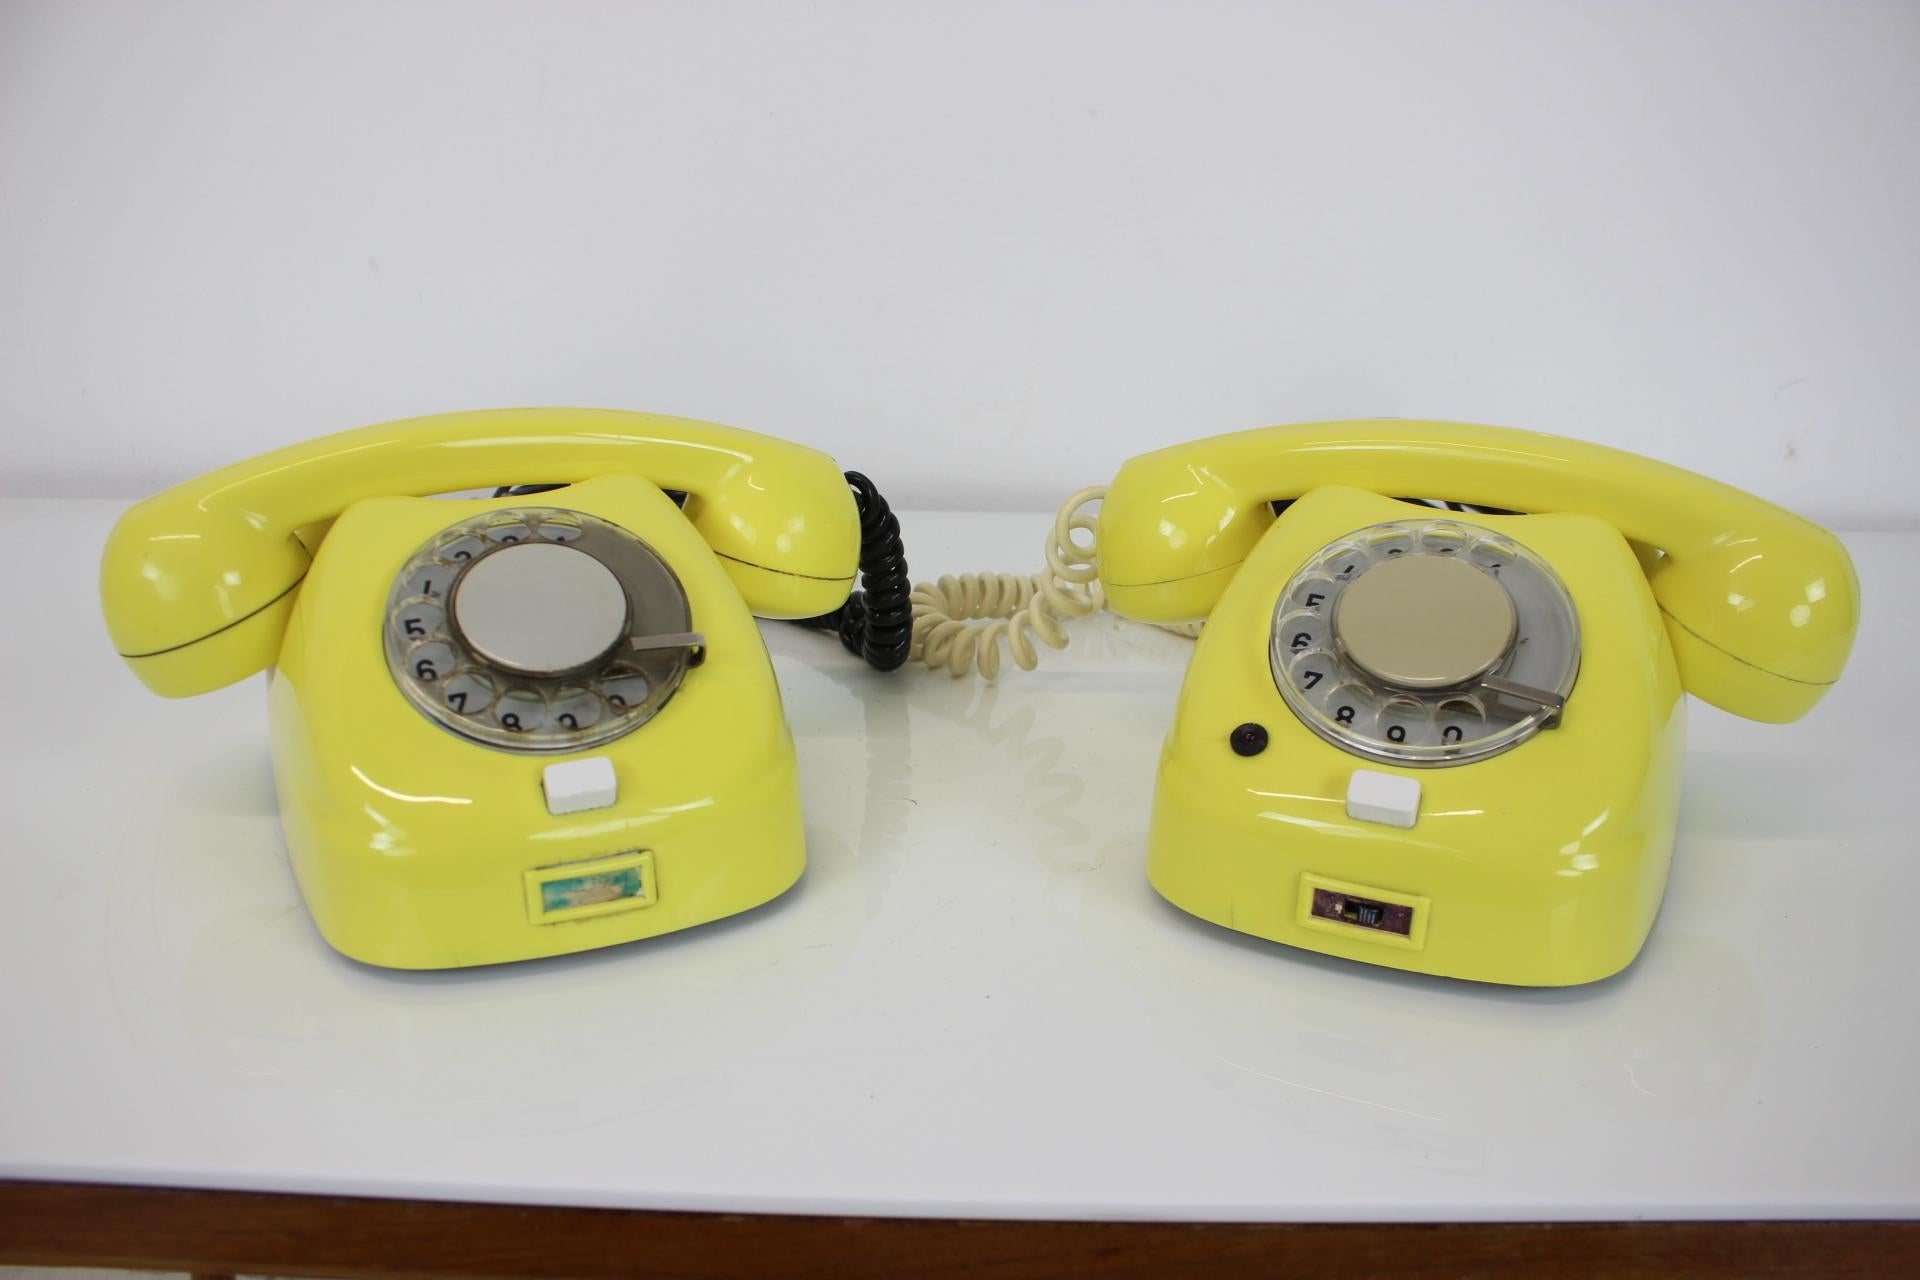 1974 phones